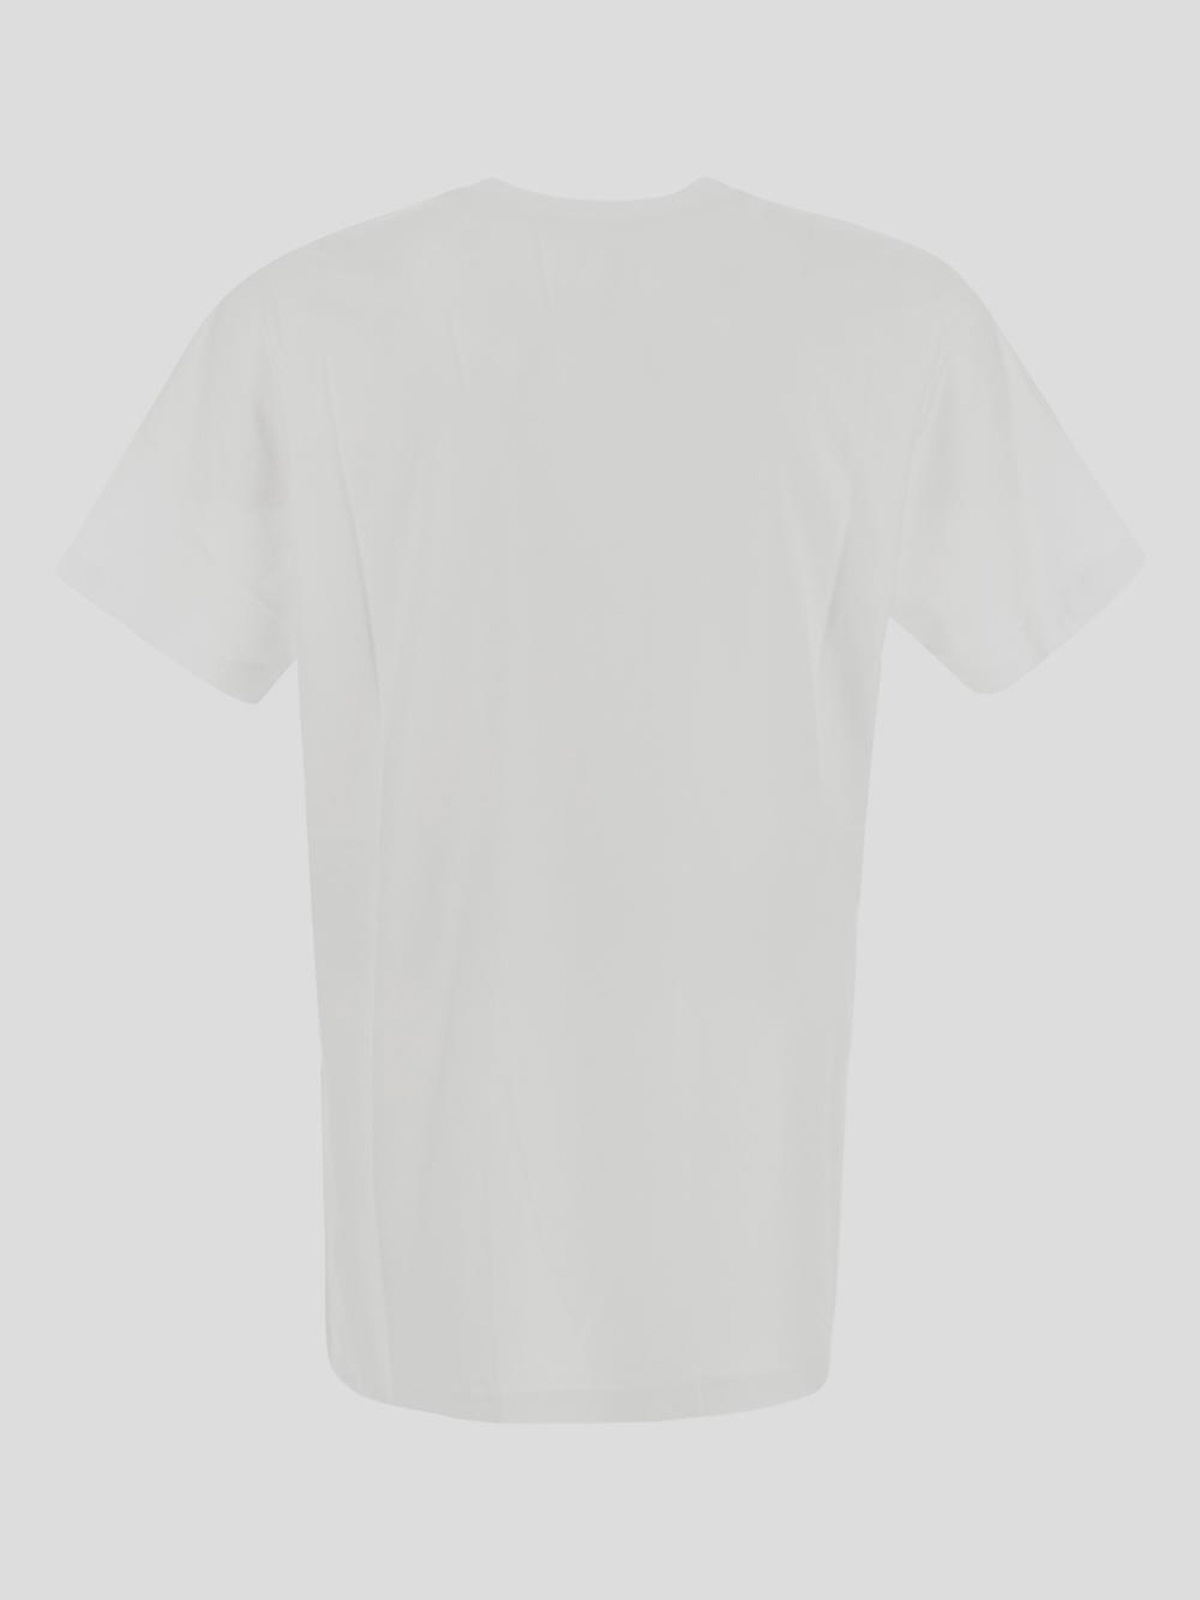 Shop Marni T-shirt In White